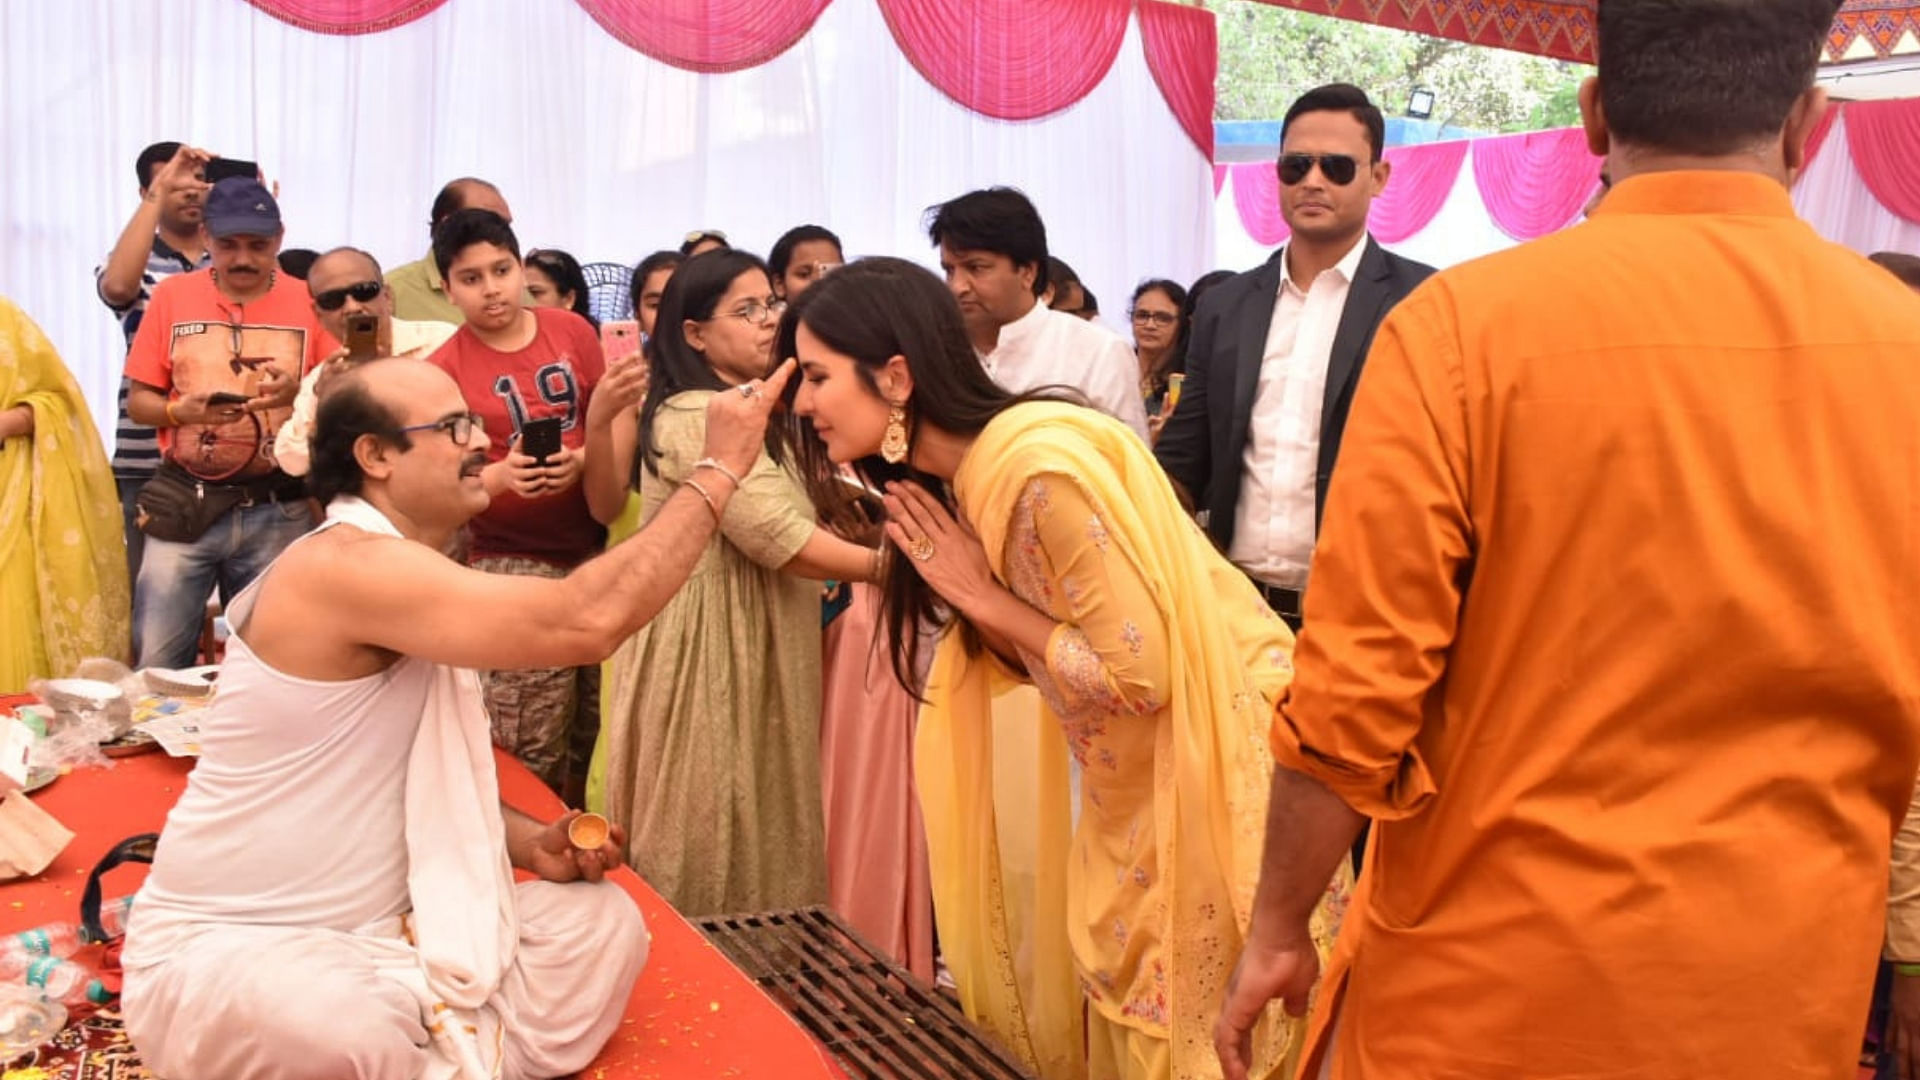 Katrina Kaif receives blessing from a pandit at Anurag Basu’s Saraswati Puja.